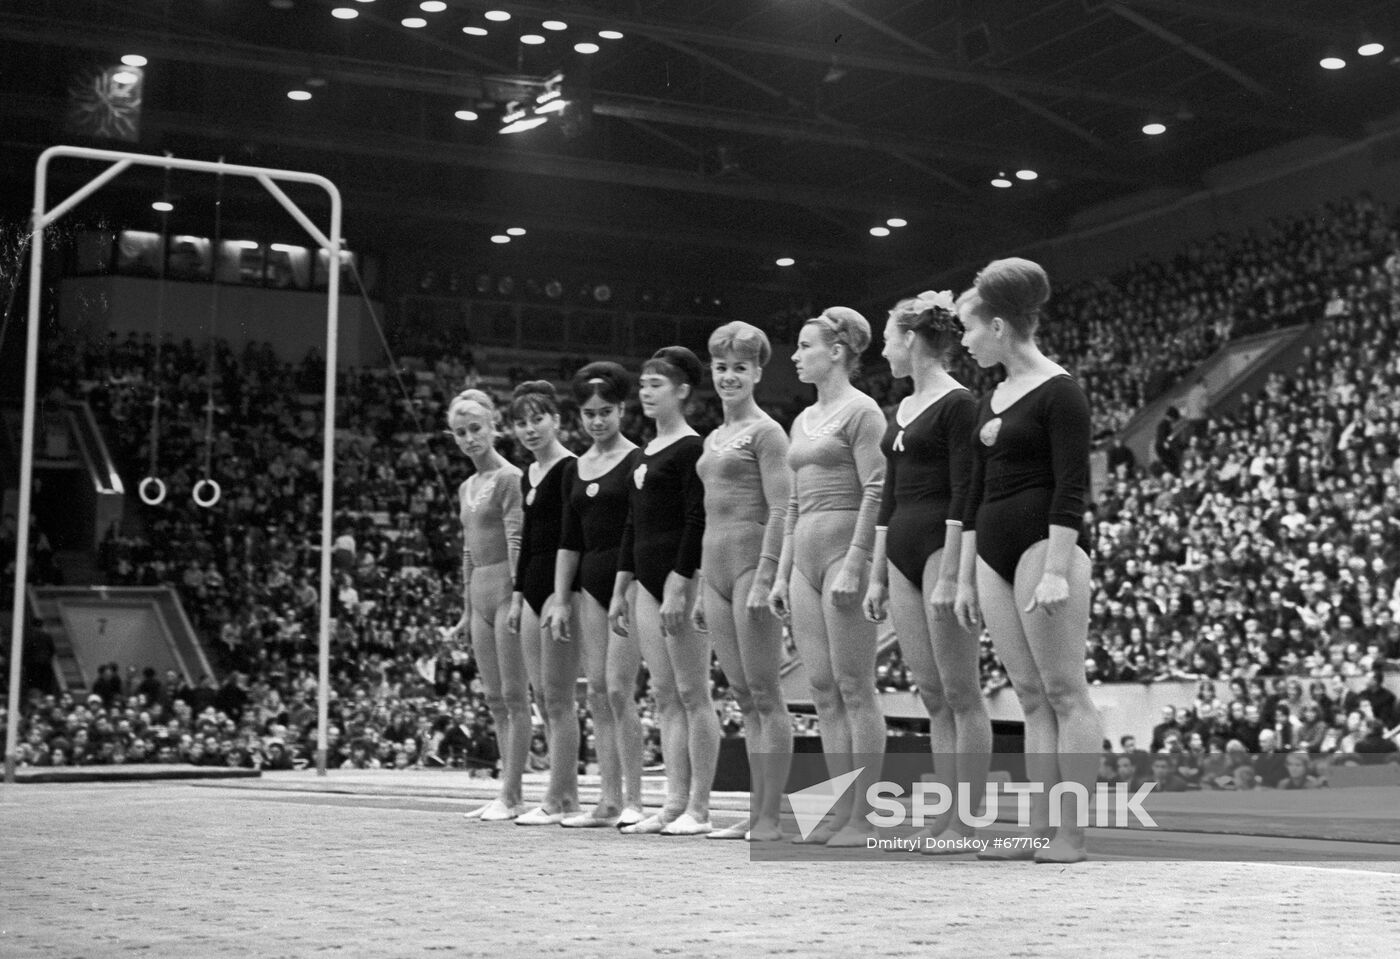 Soviet gymnasts